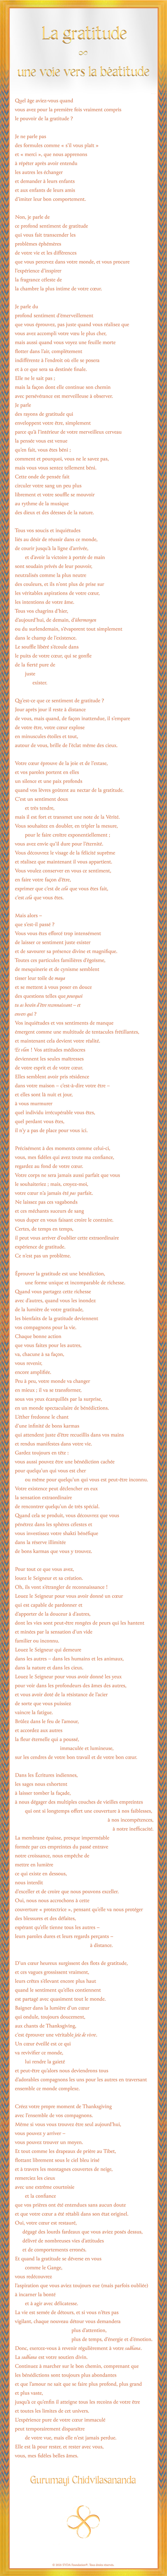 French Poem